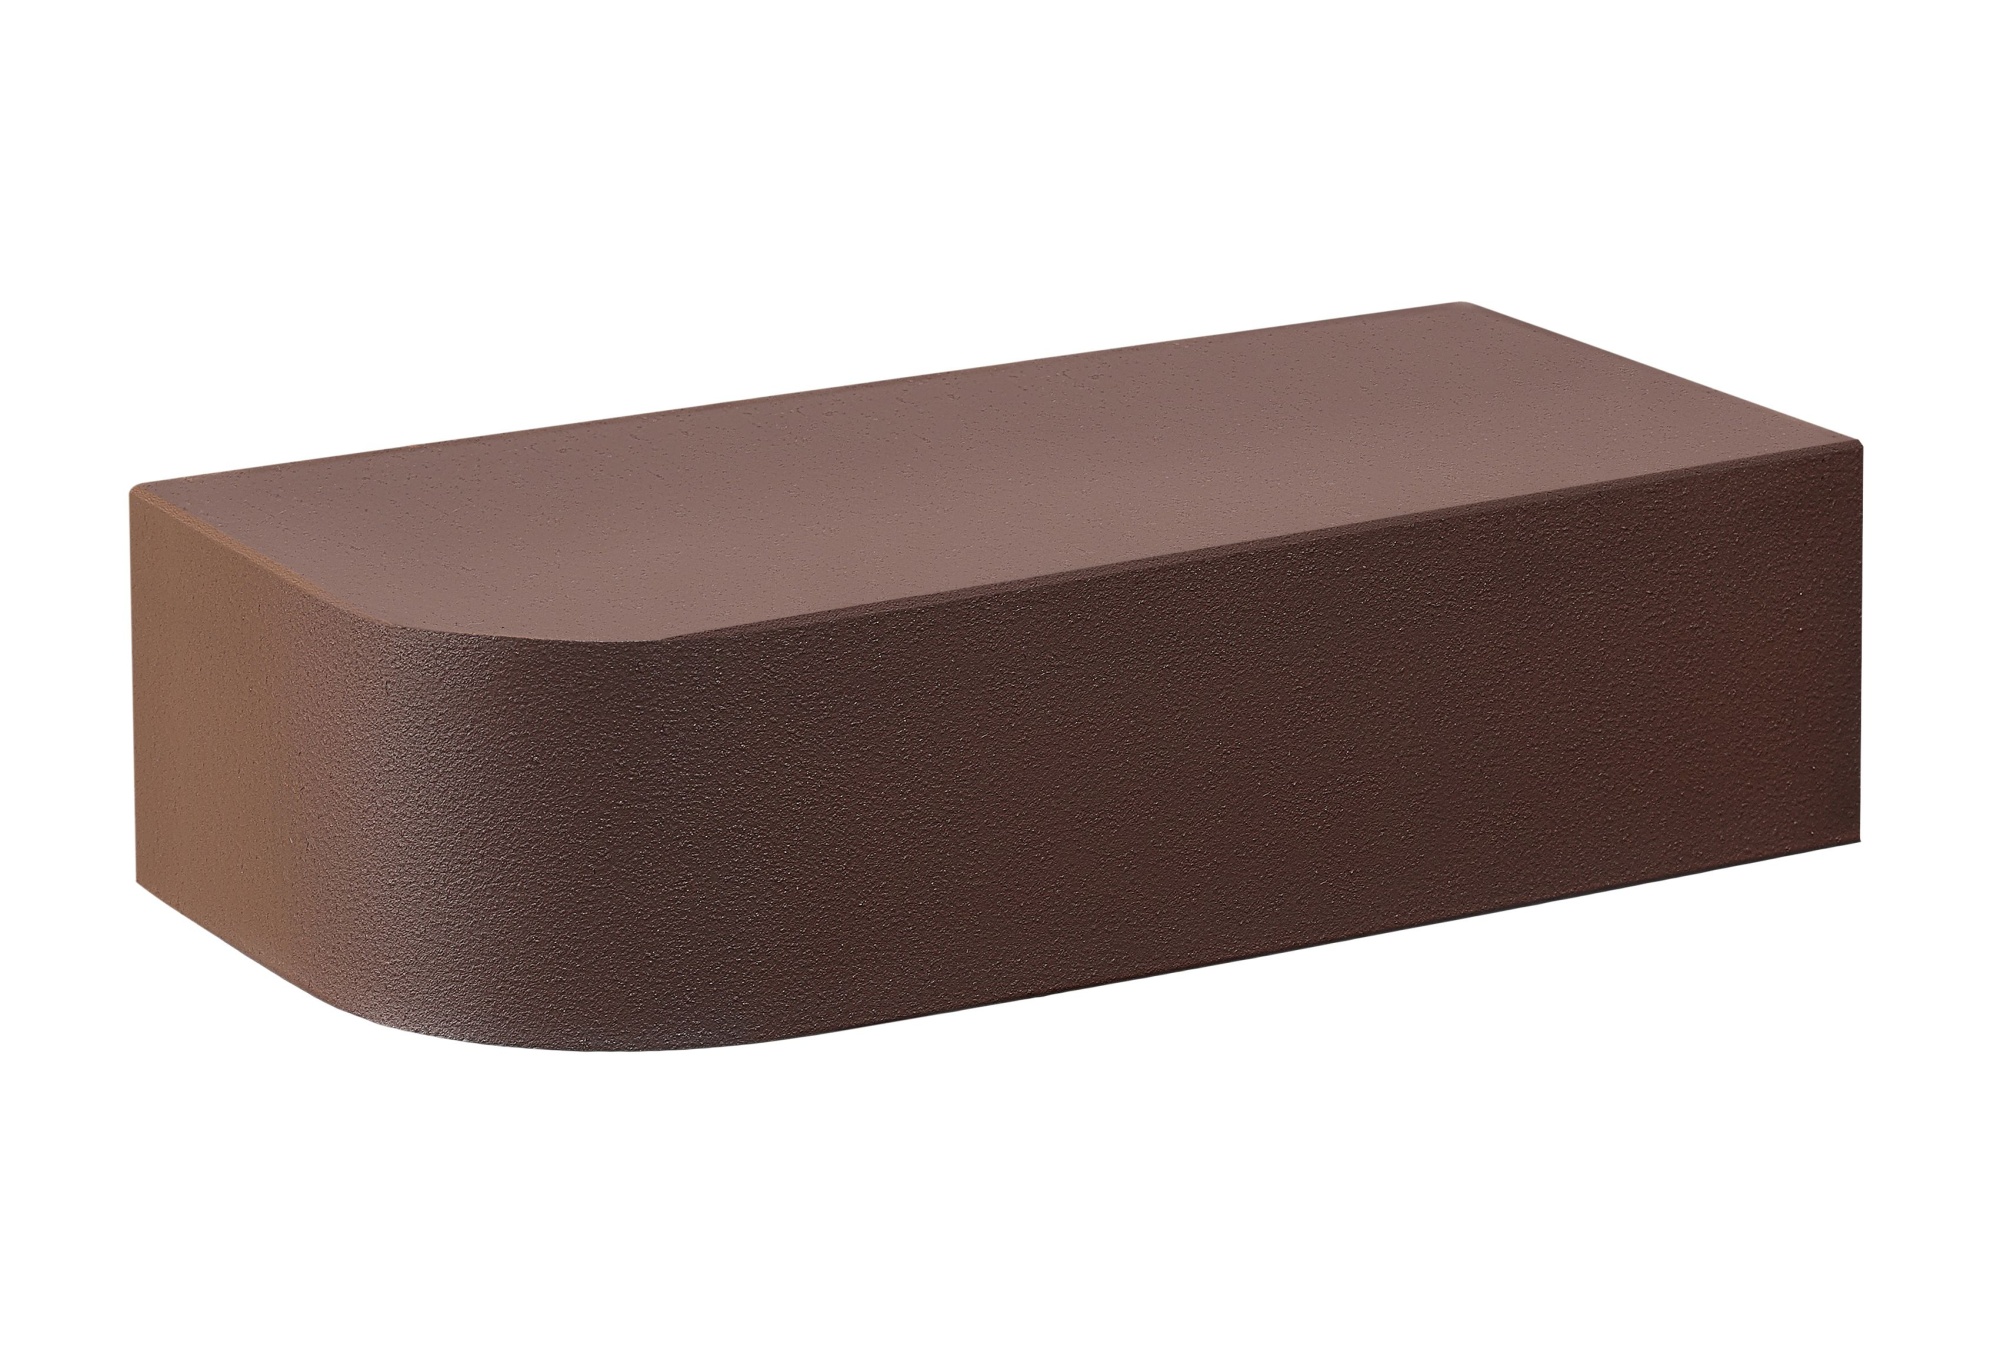 Кирпич керамический облицовочный полнотелый радиусный КС-Керамик Темный шоколад гладкий 1НФ 250*120*65 мм